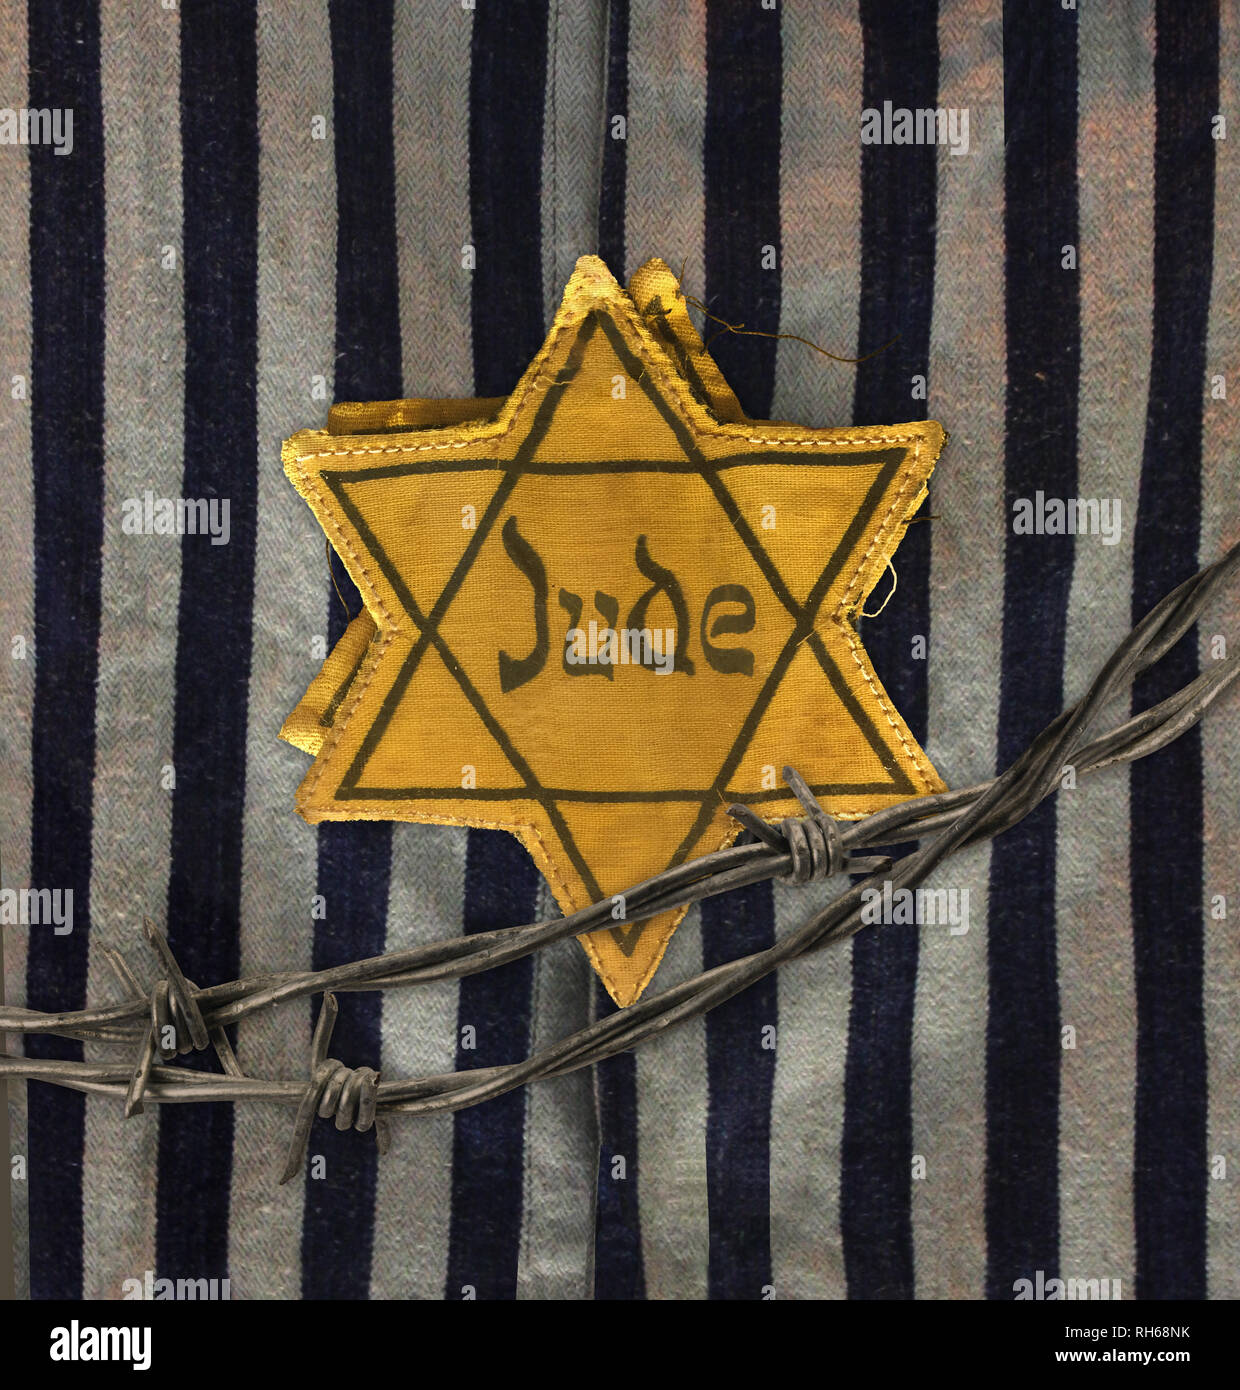 Hollocaust Tag der Erinnerung, Gelber Stern auf grau und schwarz Stoff Hintergrund. Das Wort Jude bedeutet Jude in deutscher Sprache. Stockfoto